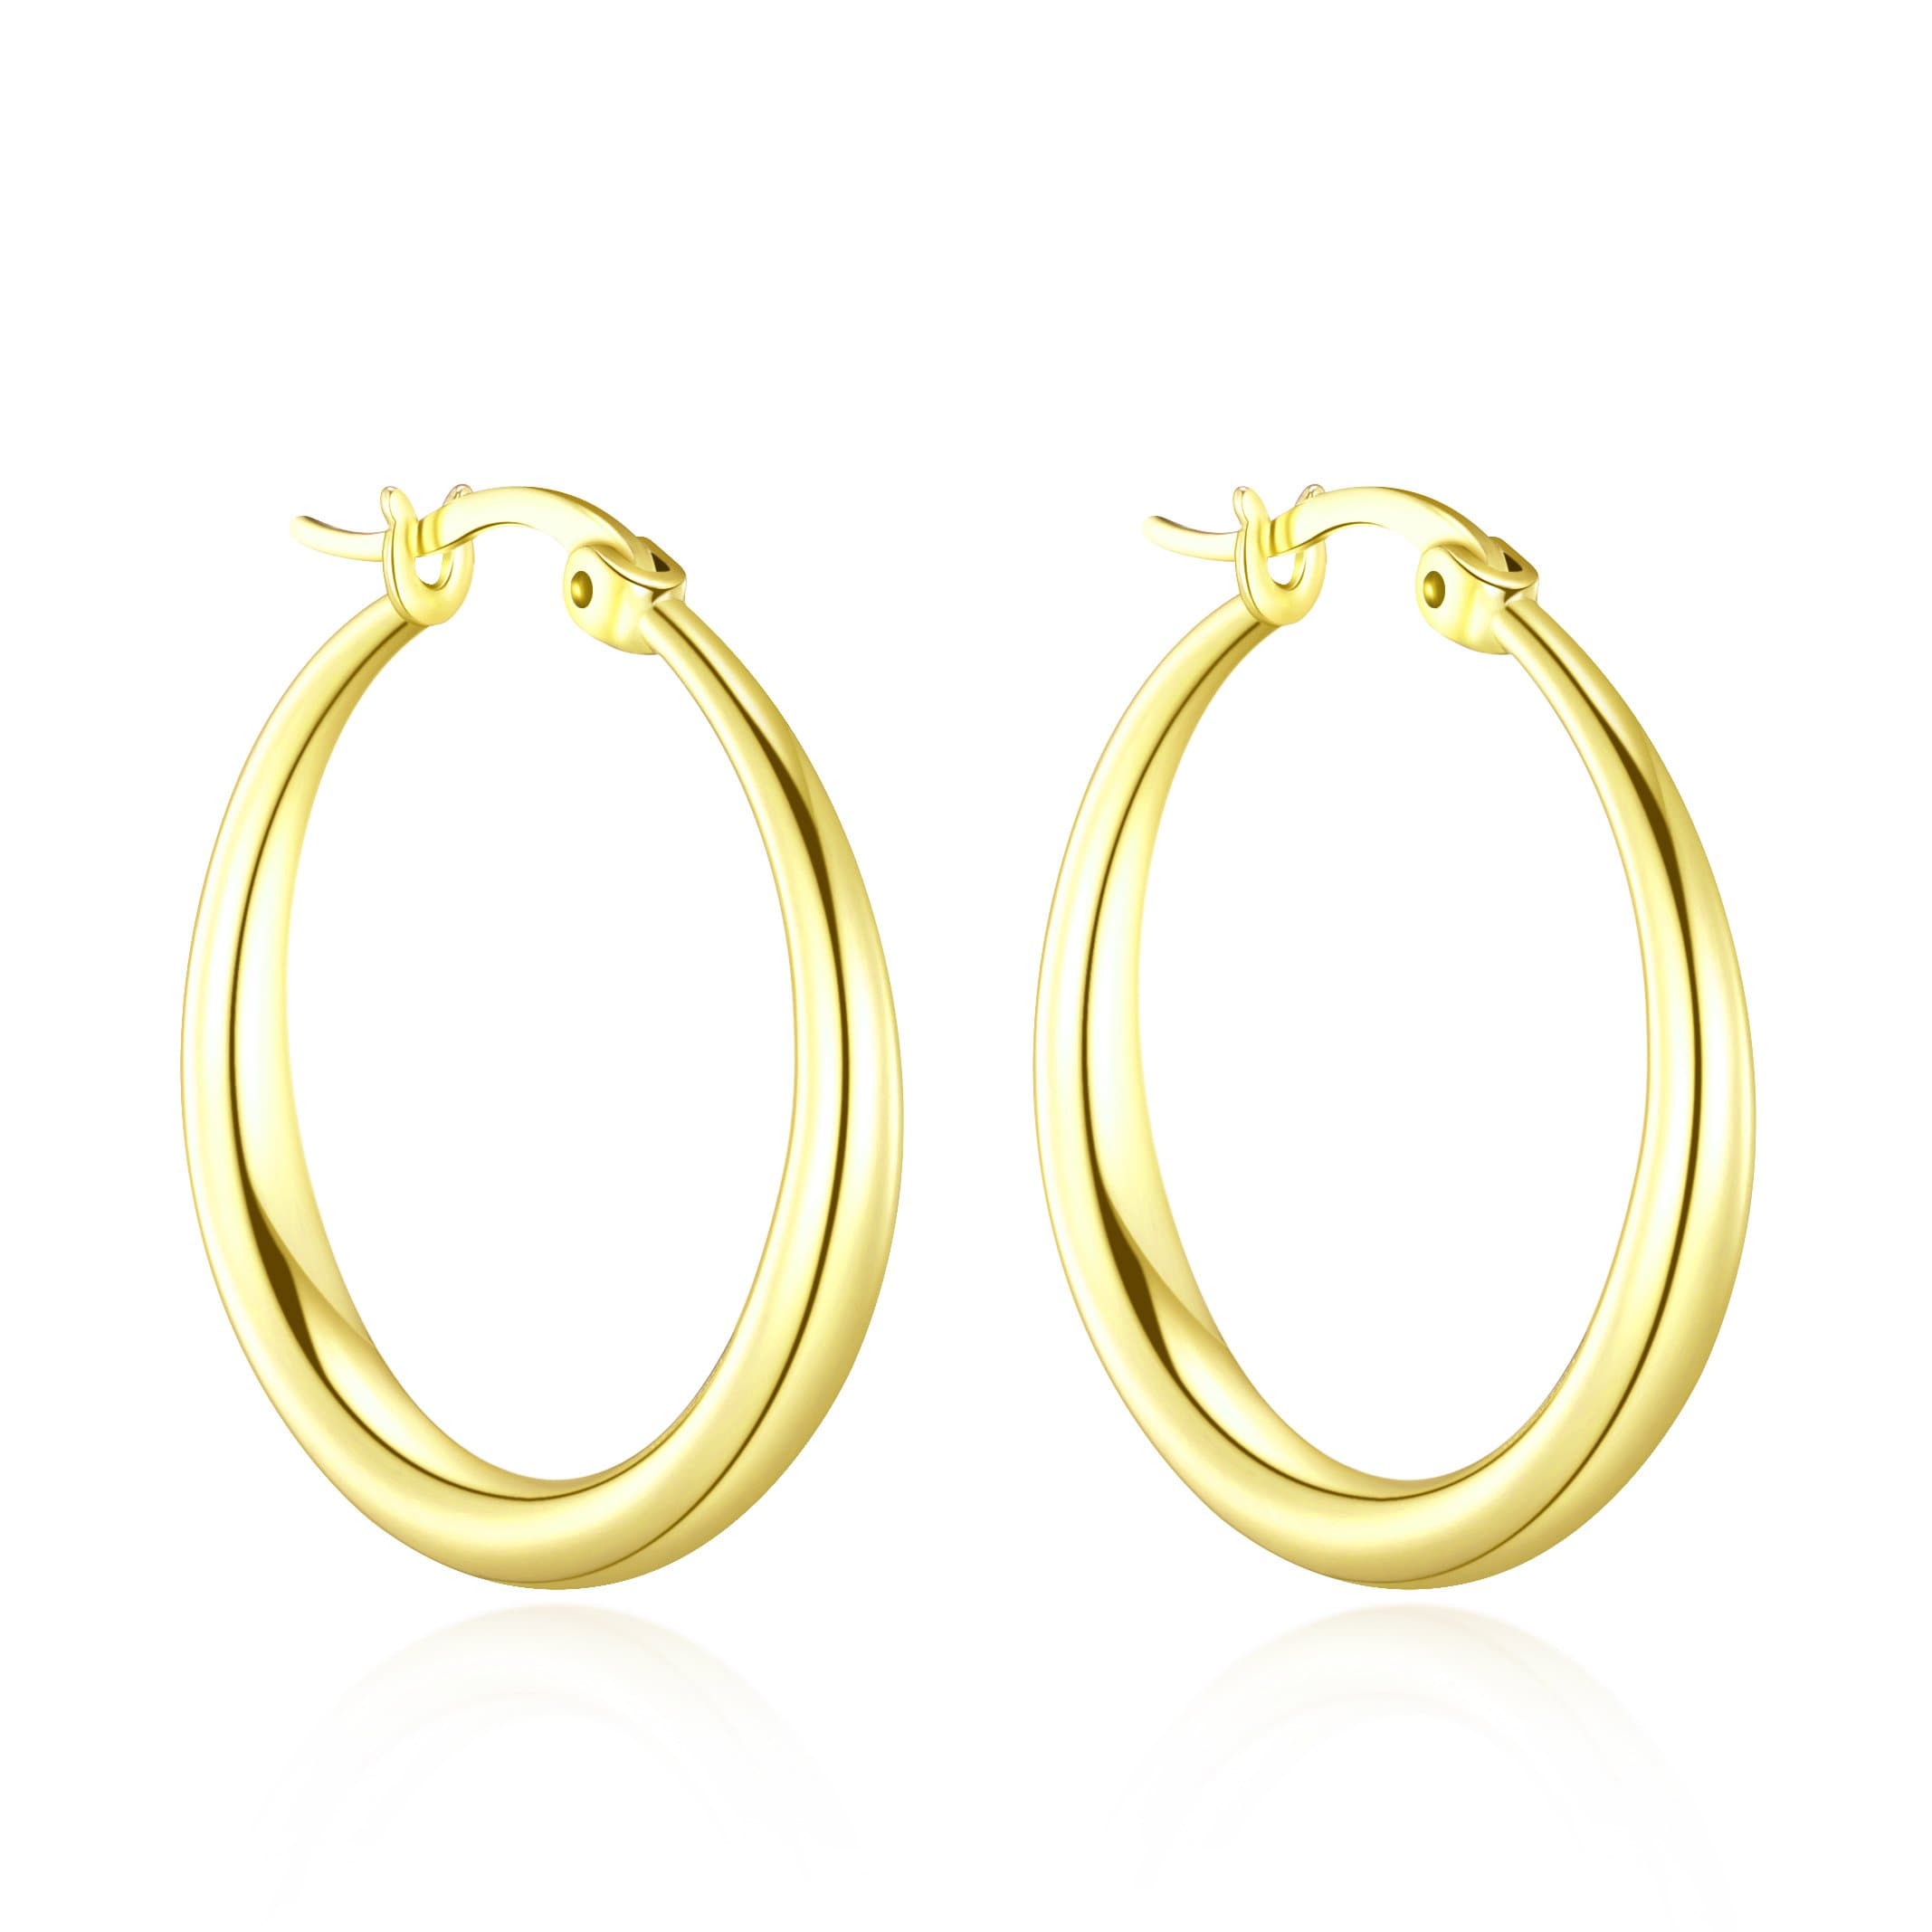 Gold Plated 25mm Hoop Earrings by Philip Jones Jewellery